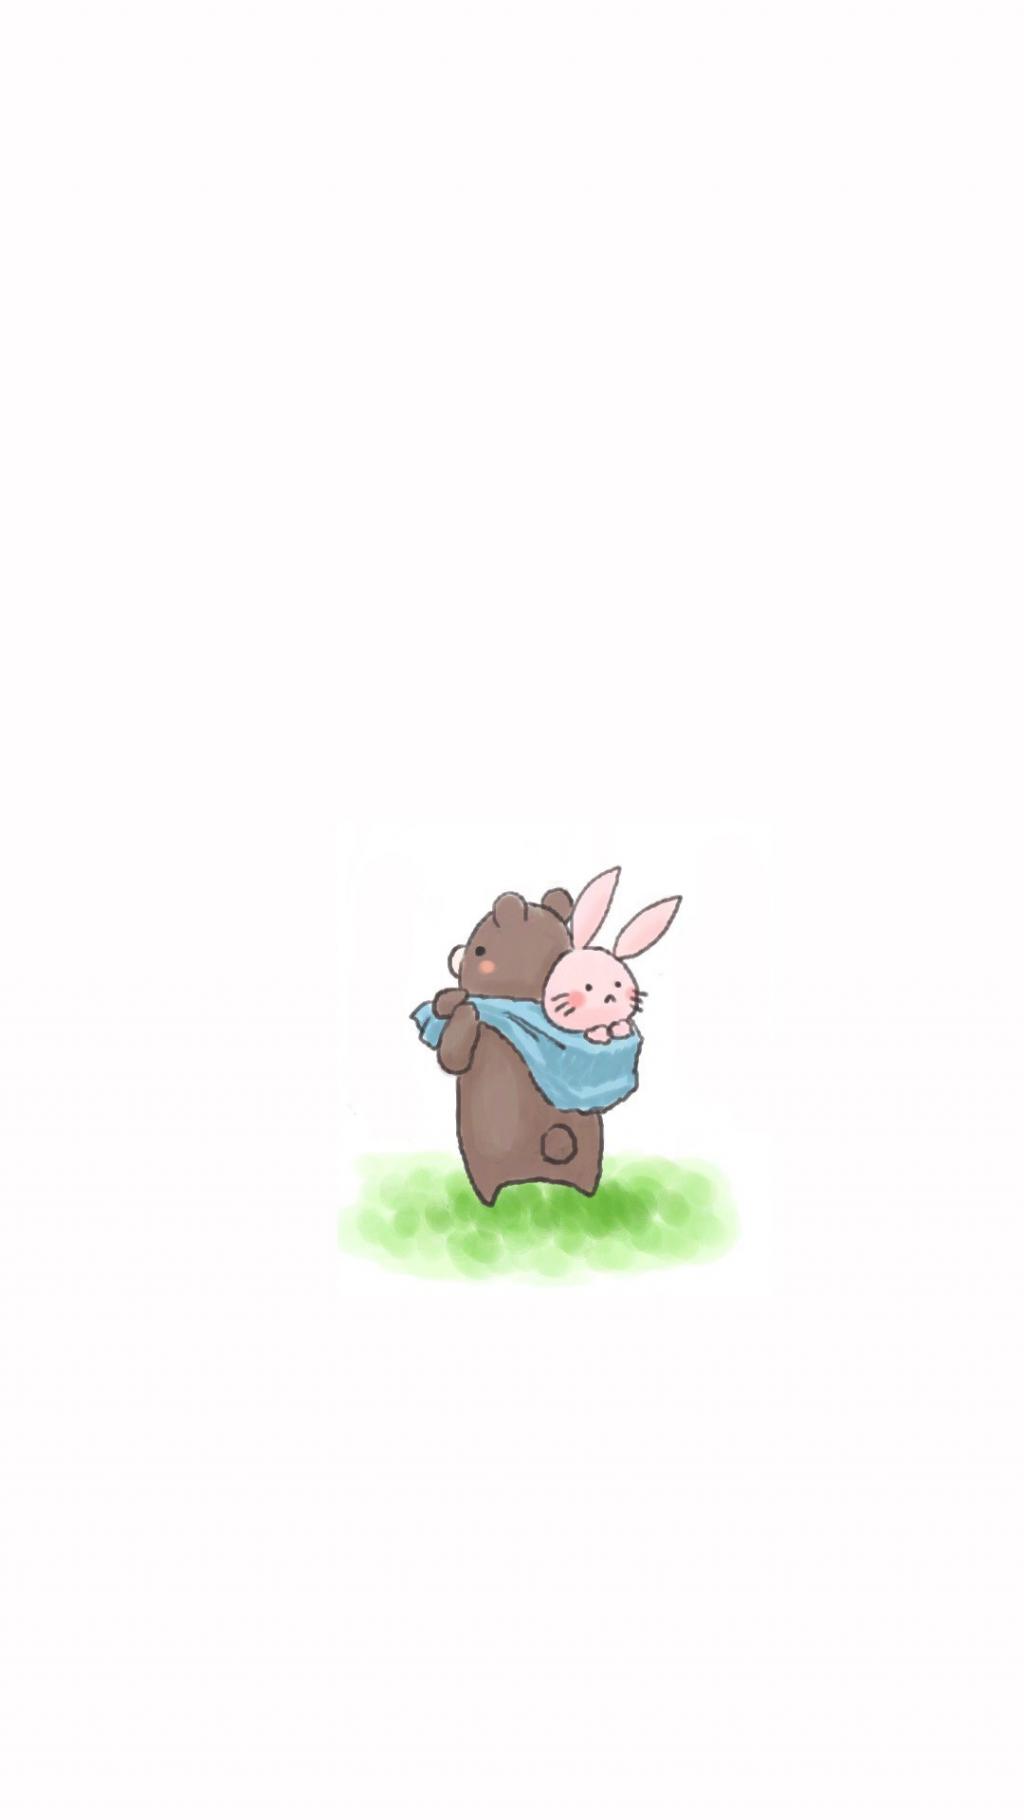 可爱卡通小熊兔子